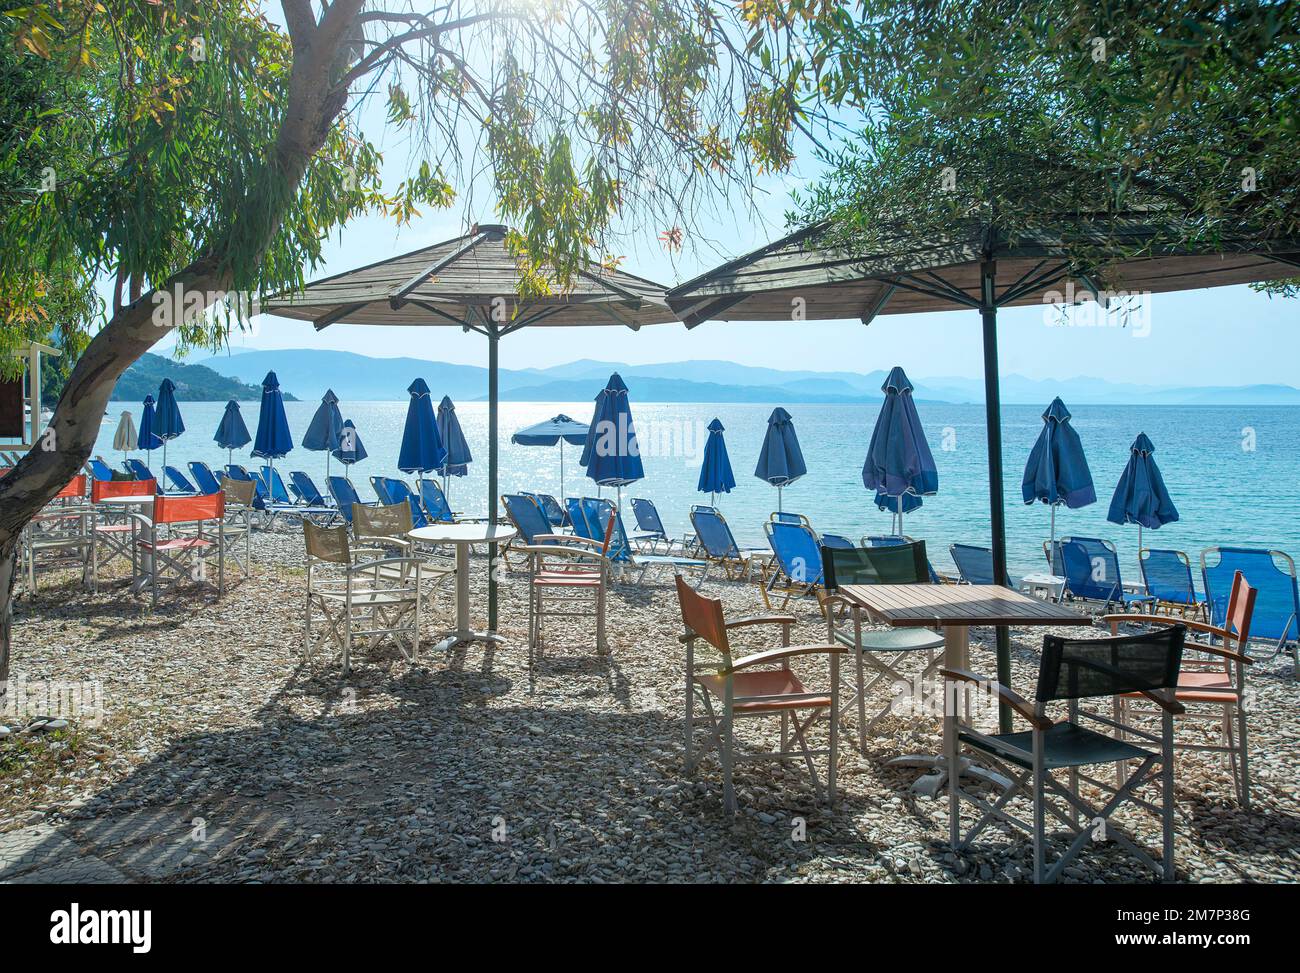 Barbati Beach, Corfu, Ionian islands, Greece Stock Photo